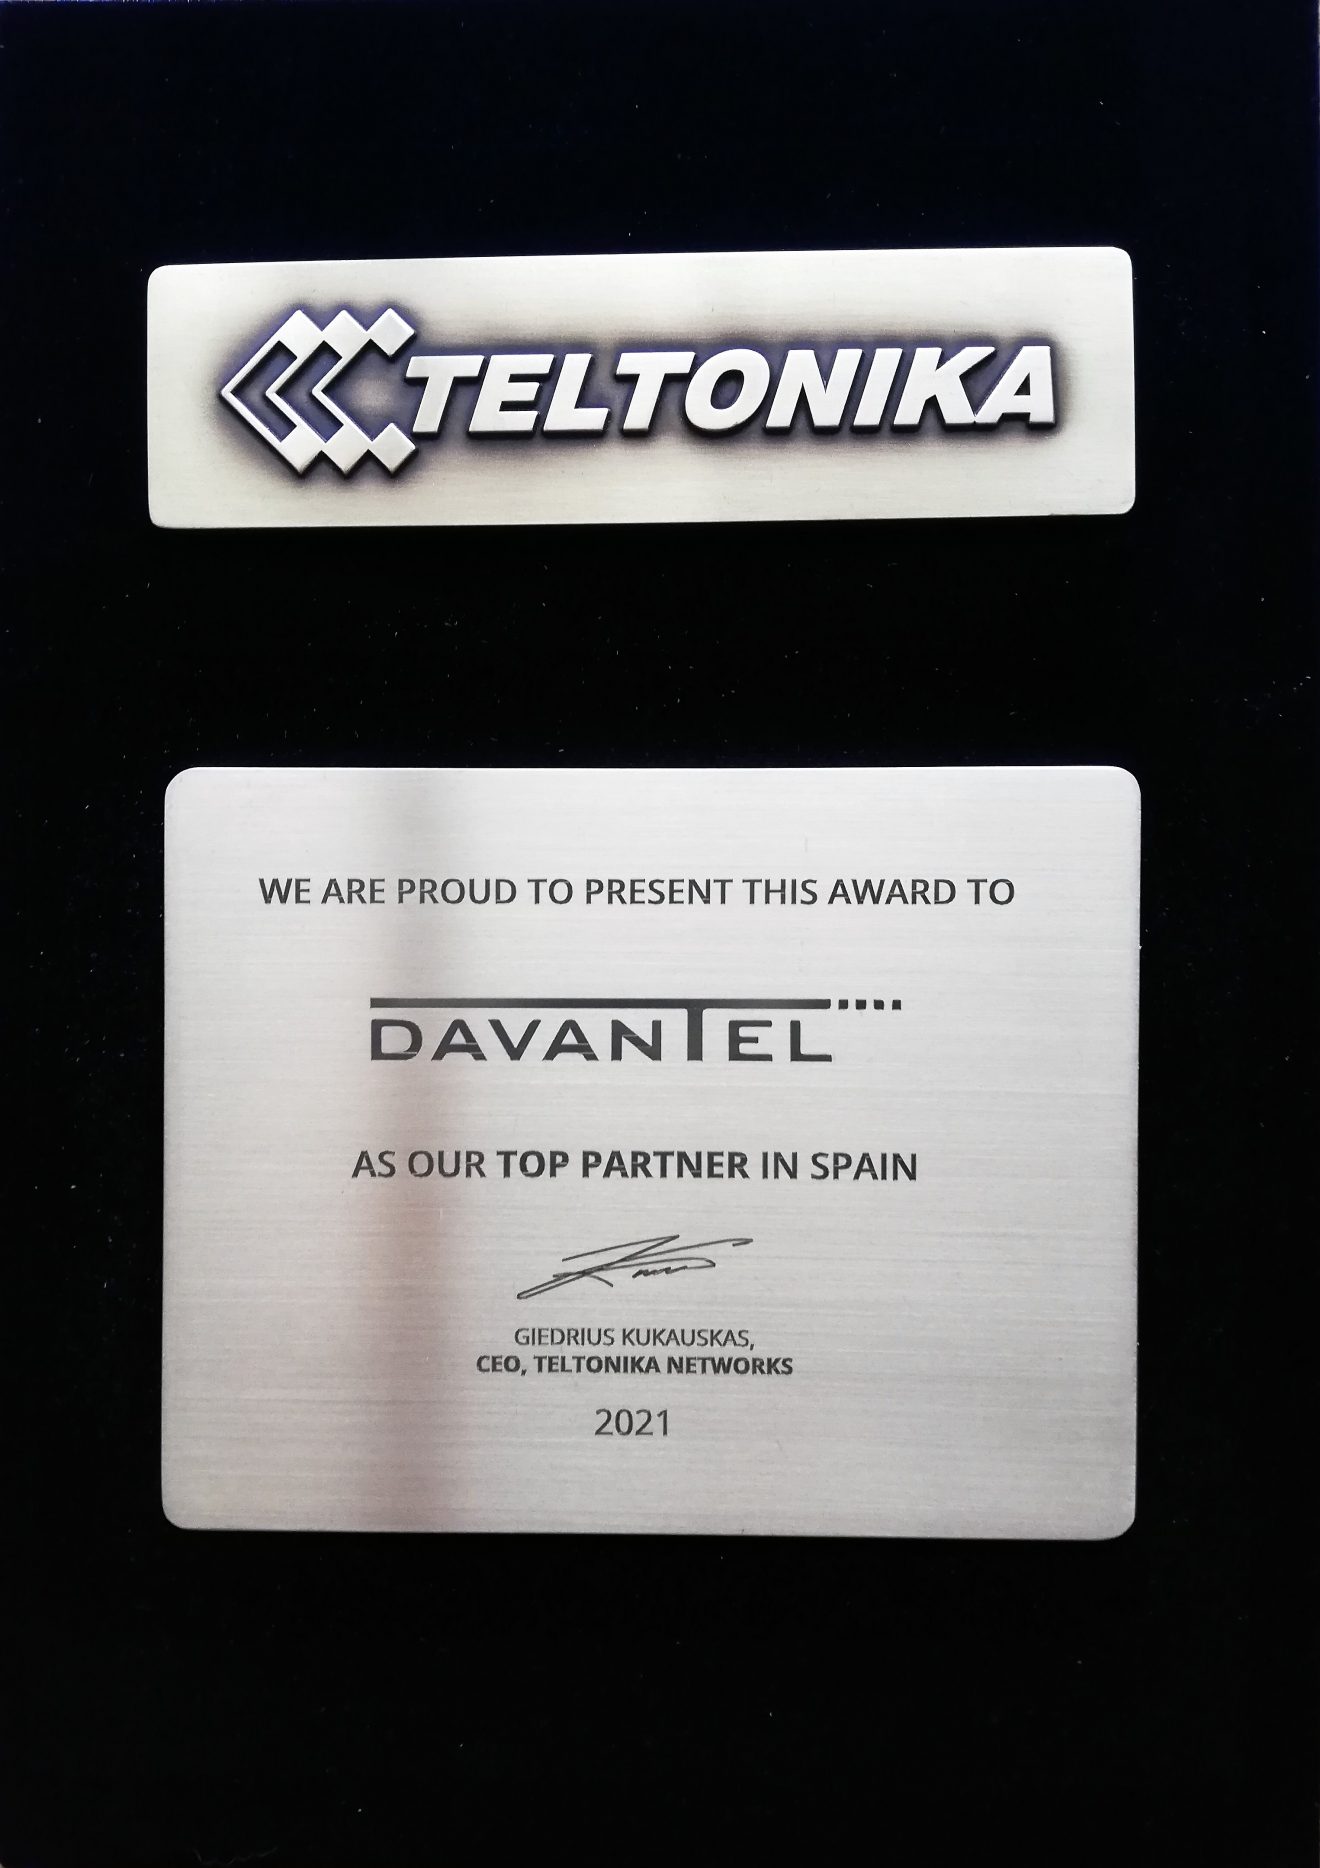 Top Partner de Teltonika Networks en España en el 2021